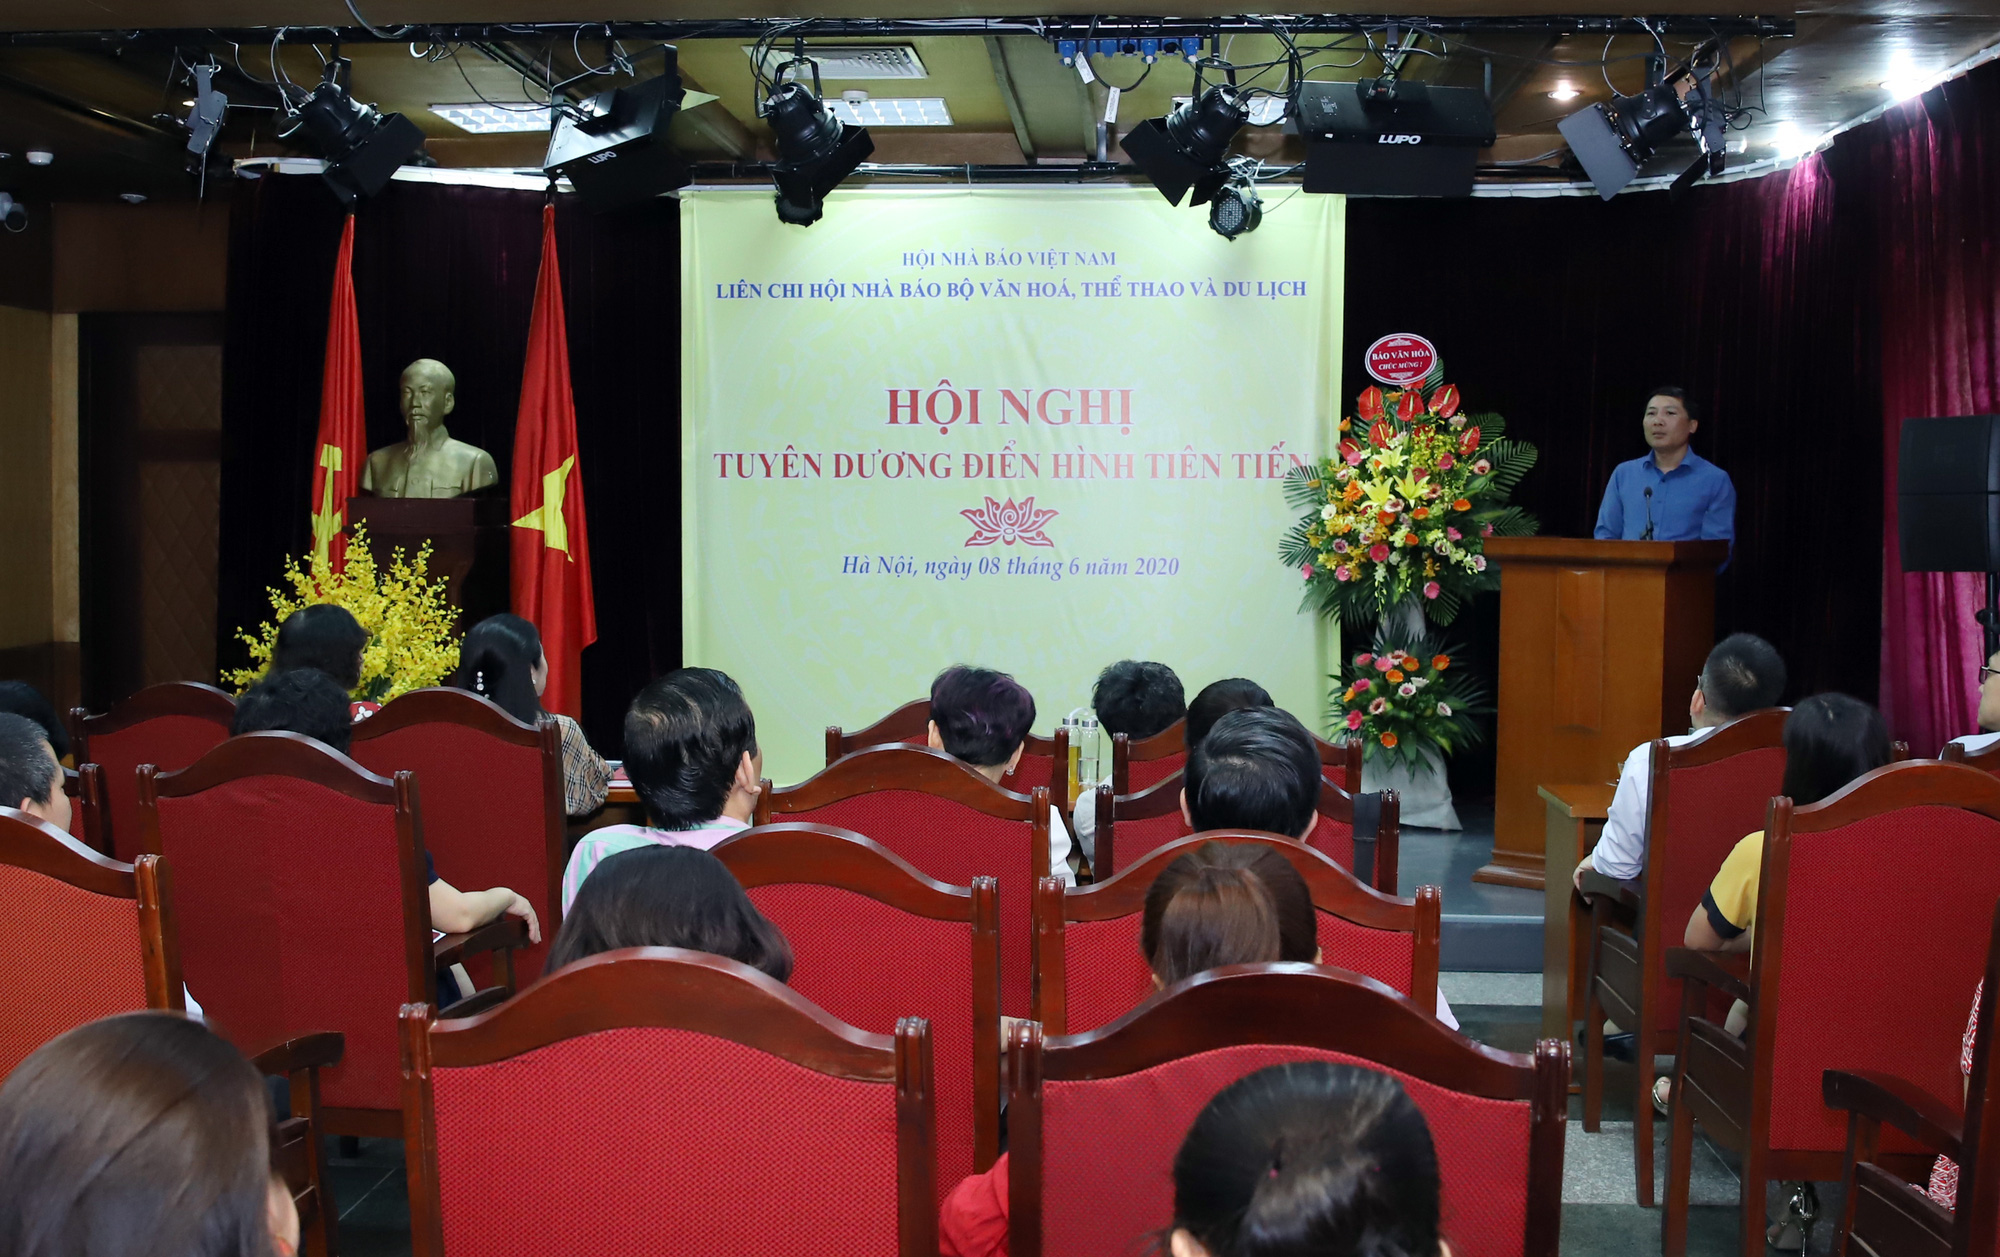  Liên Chi hội Nhà báo Bộ VHTTDL tổ chức Hội nghị tuyên dương điển hình tiên tiến - Ảnh 1.